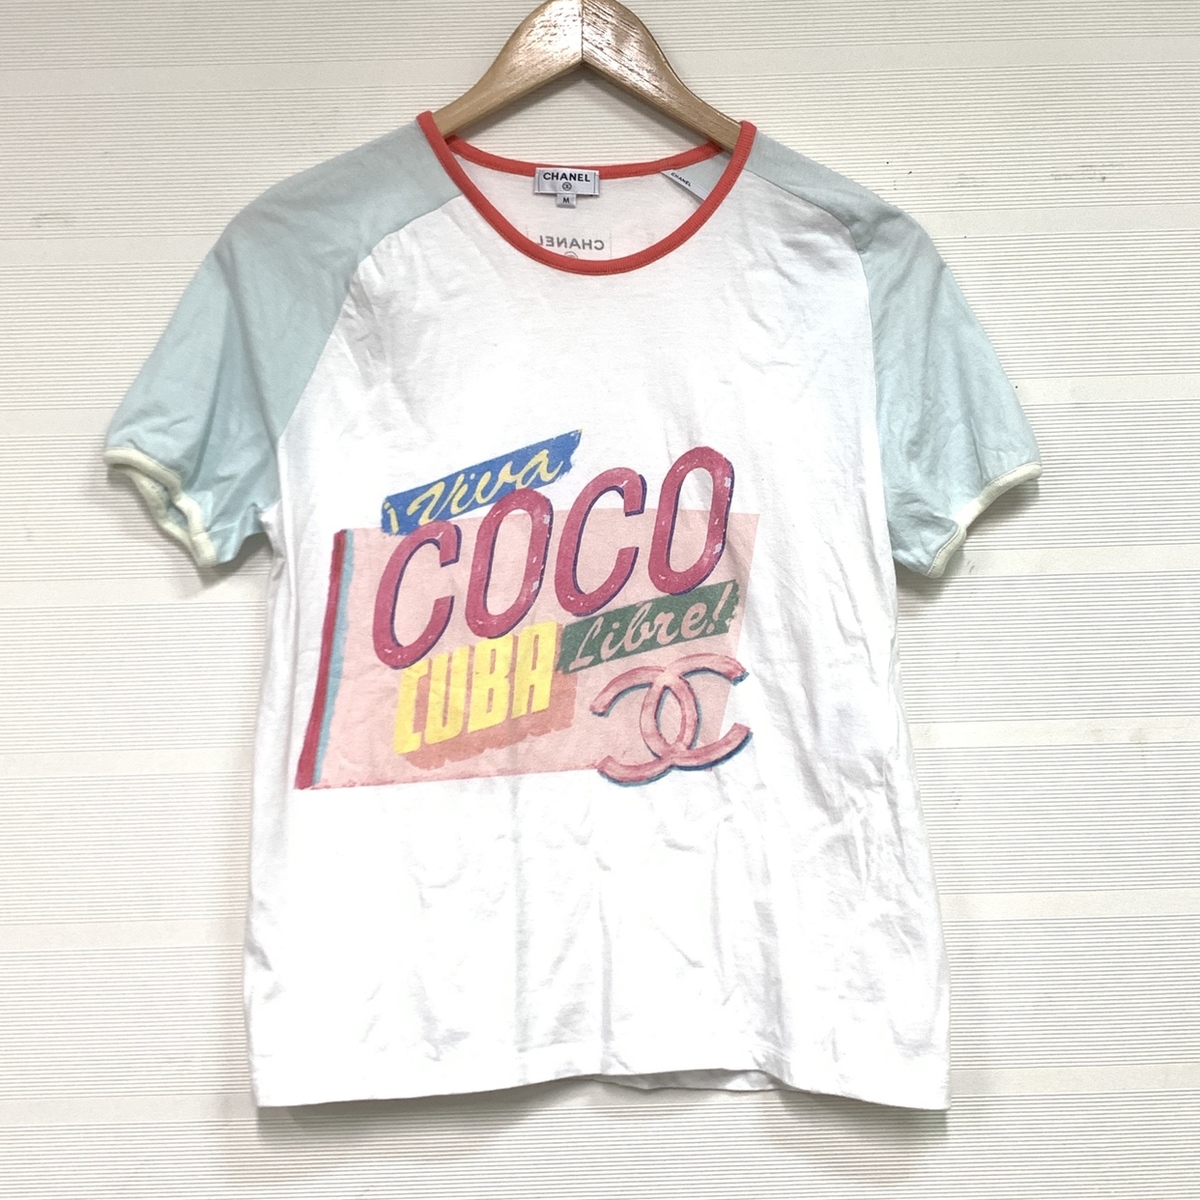 シャネルのP55821 CUBA ココキューバ プリントデザイン Tシャツの買取実績です。